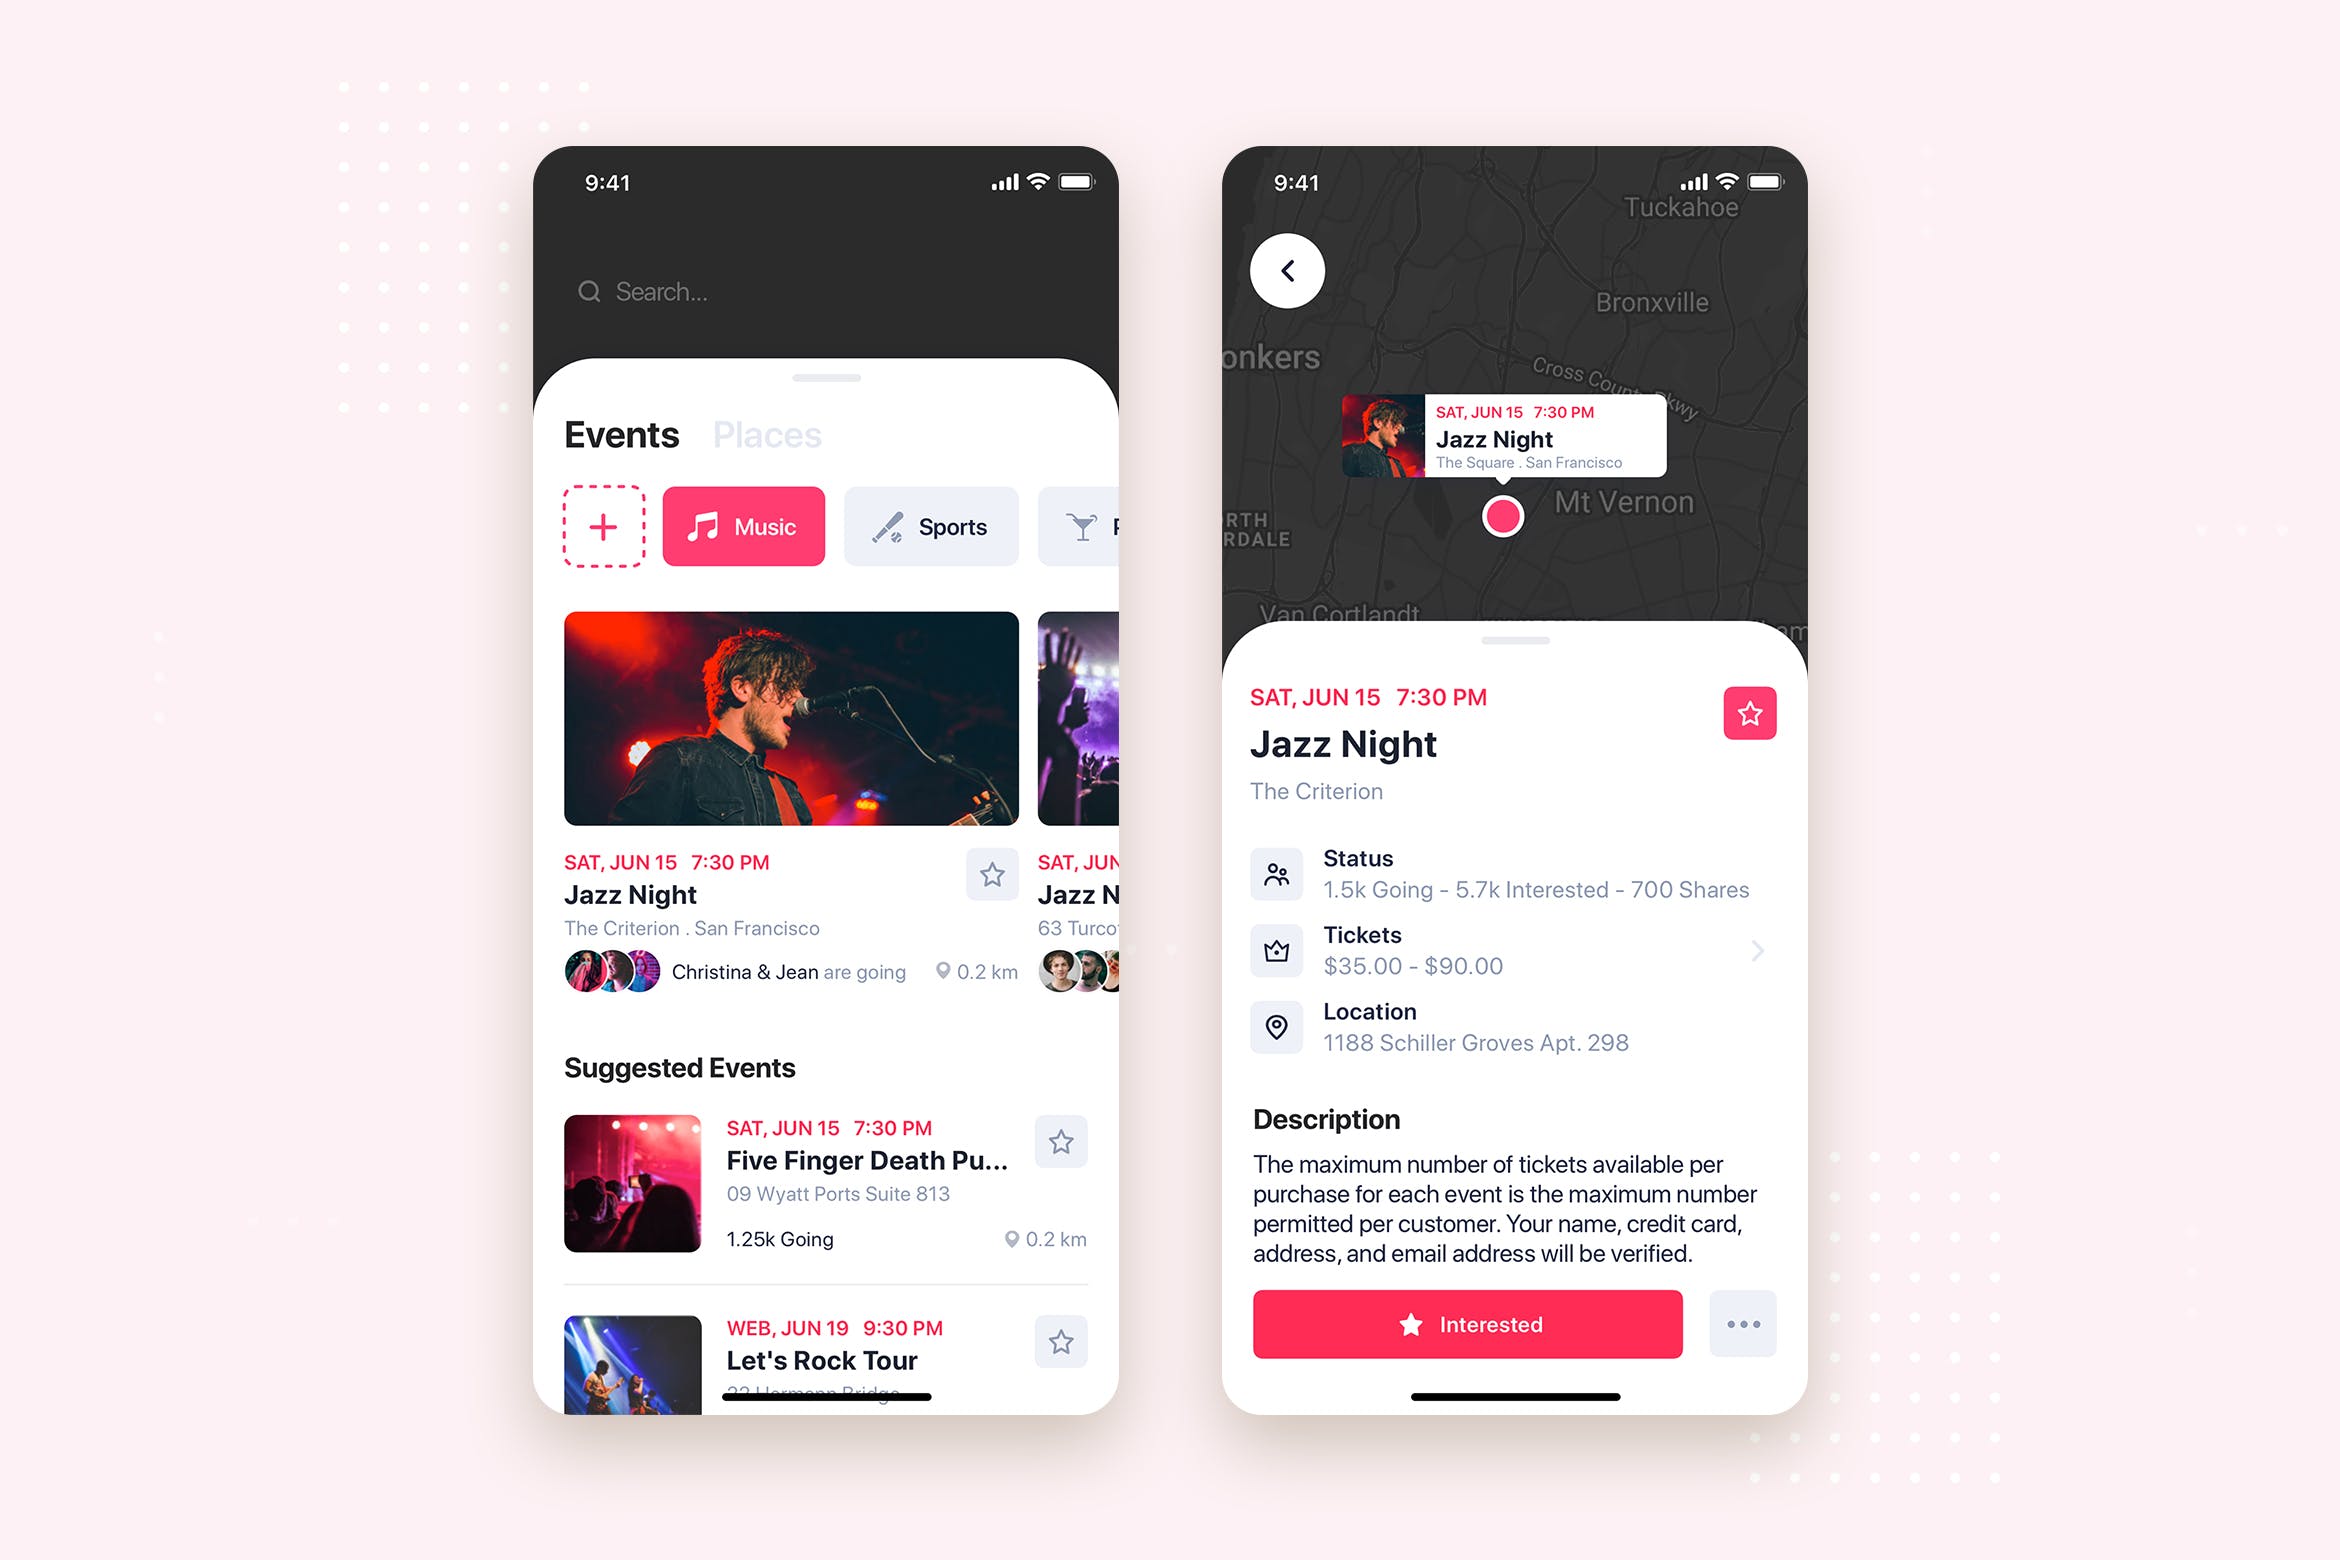 音乐活动事件APP应用列表&详情界面UI设计第一素材精选模板 Music Event Mobile App UI Kit Template插图